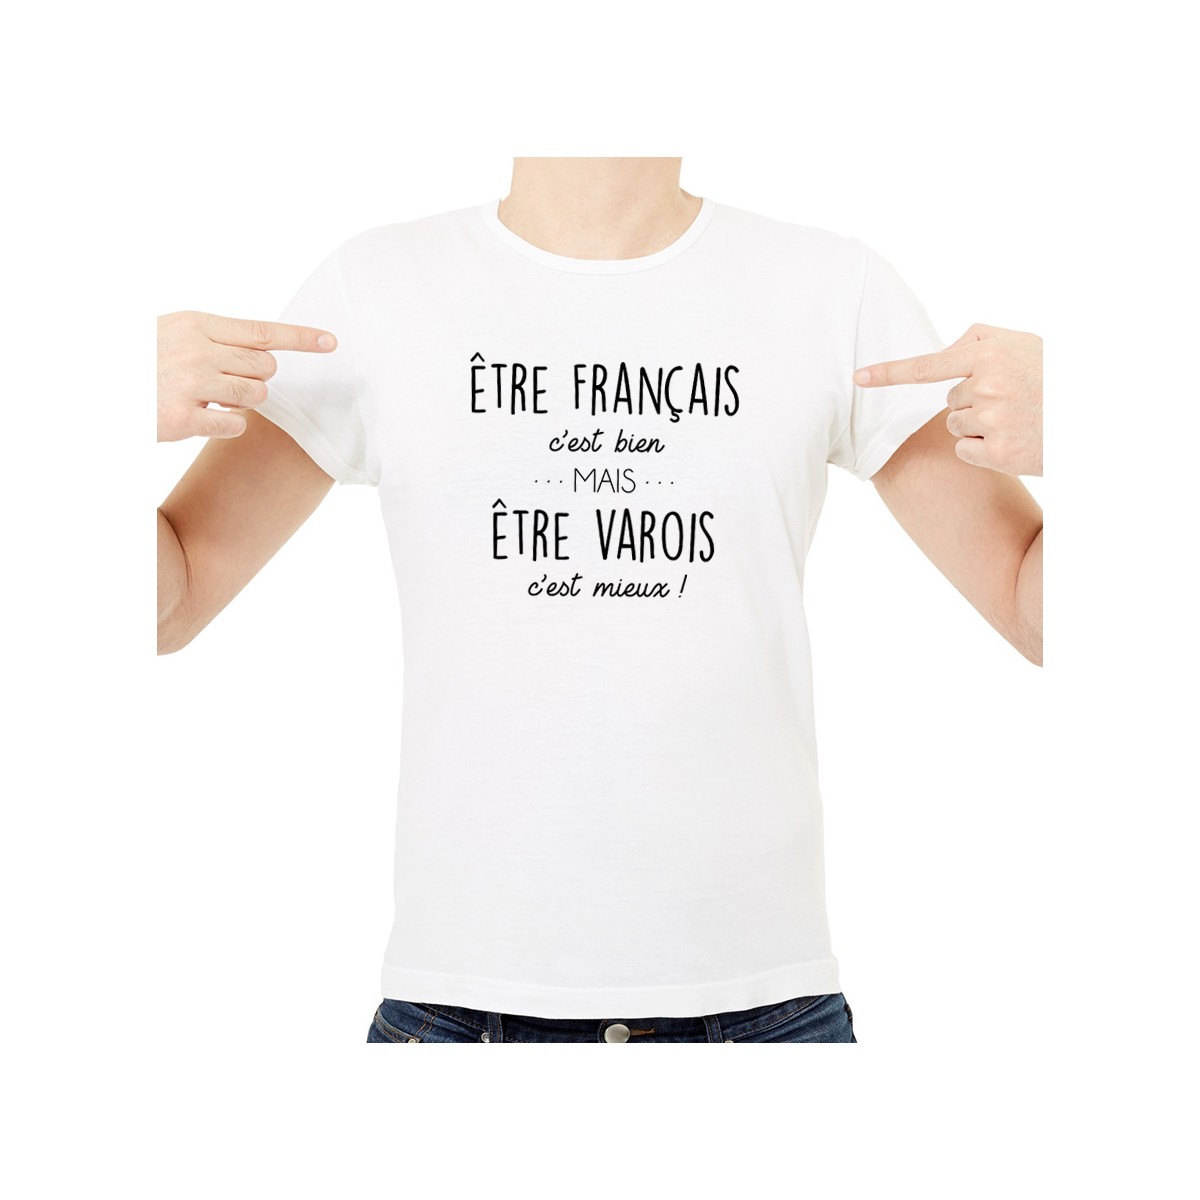 T-shirt Être Varois c'est mieux